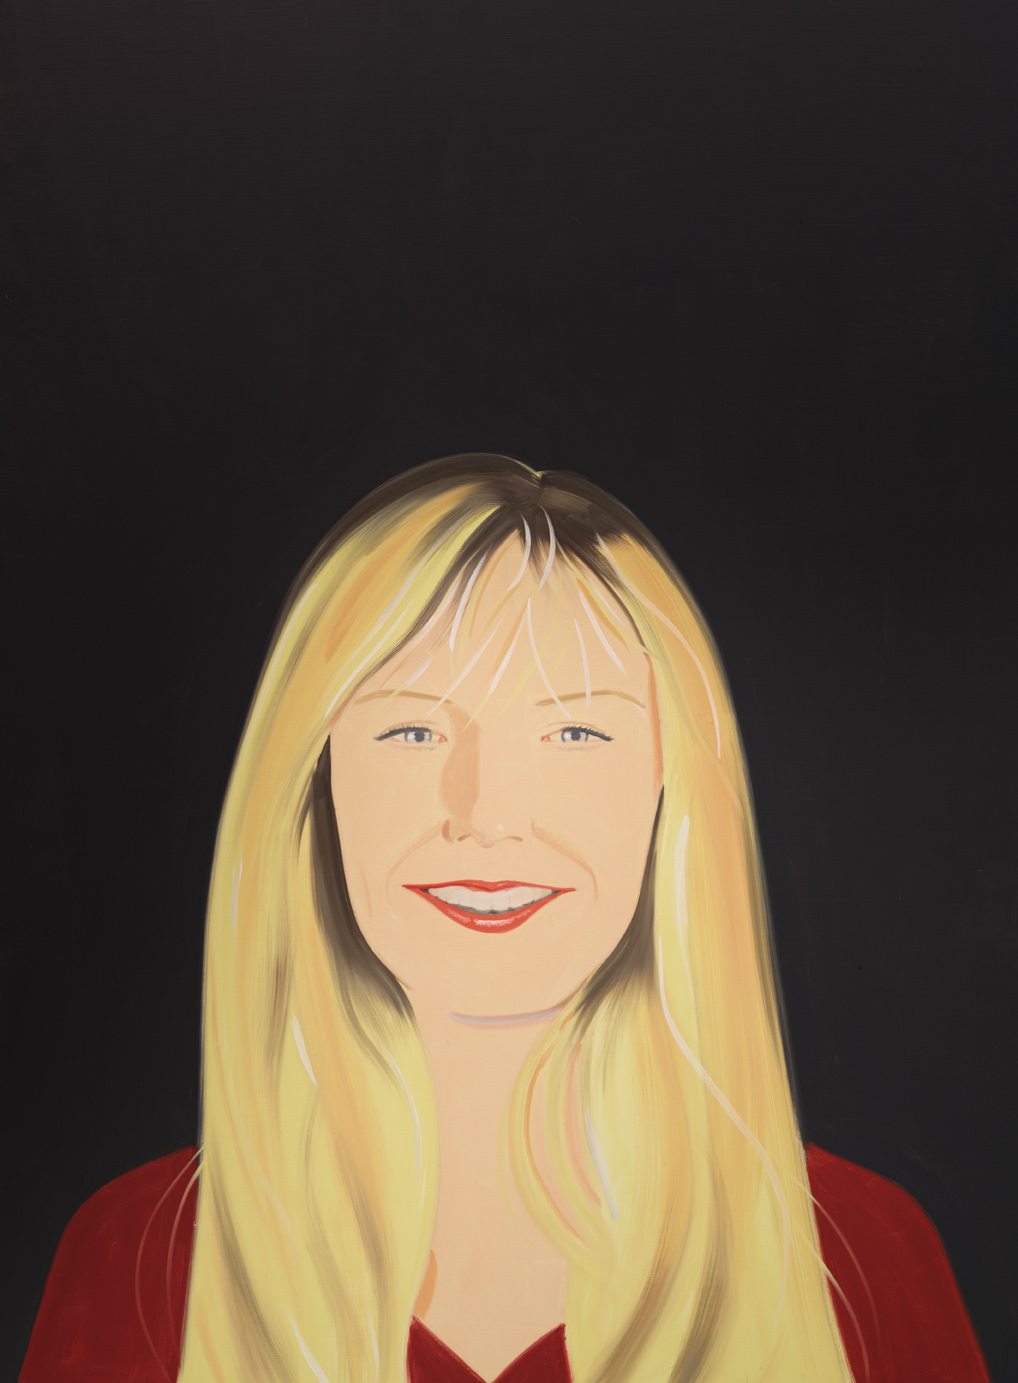 Karen Smiles | Alex Katz | Guggenheim Bilbao Museoa